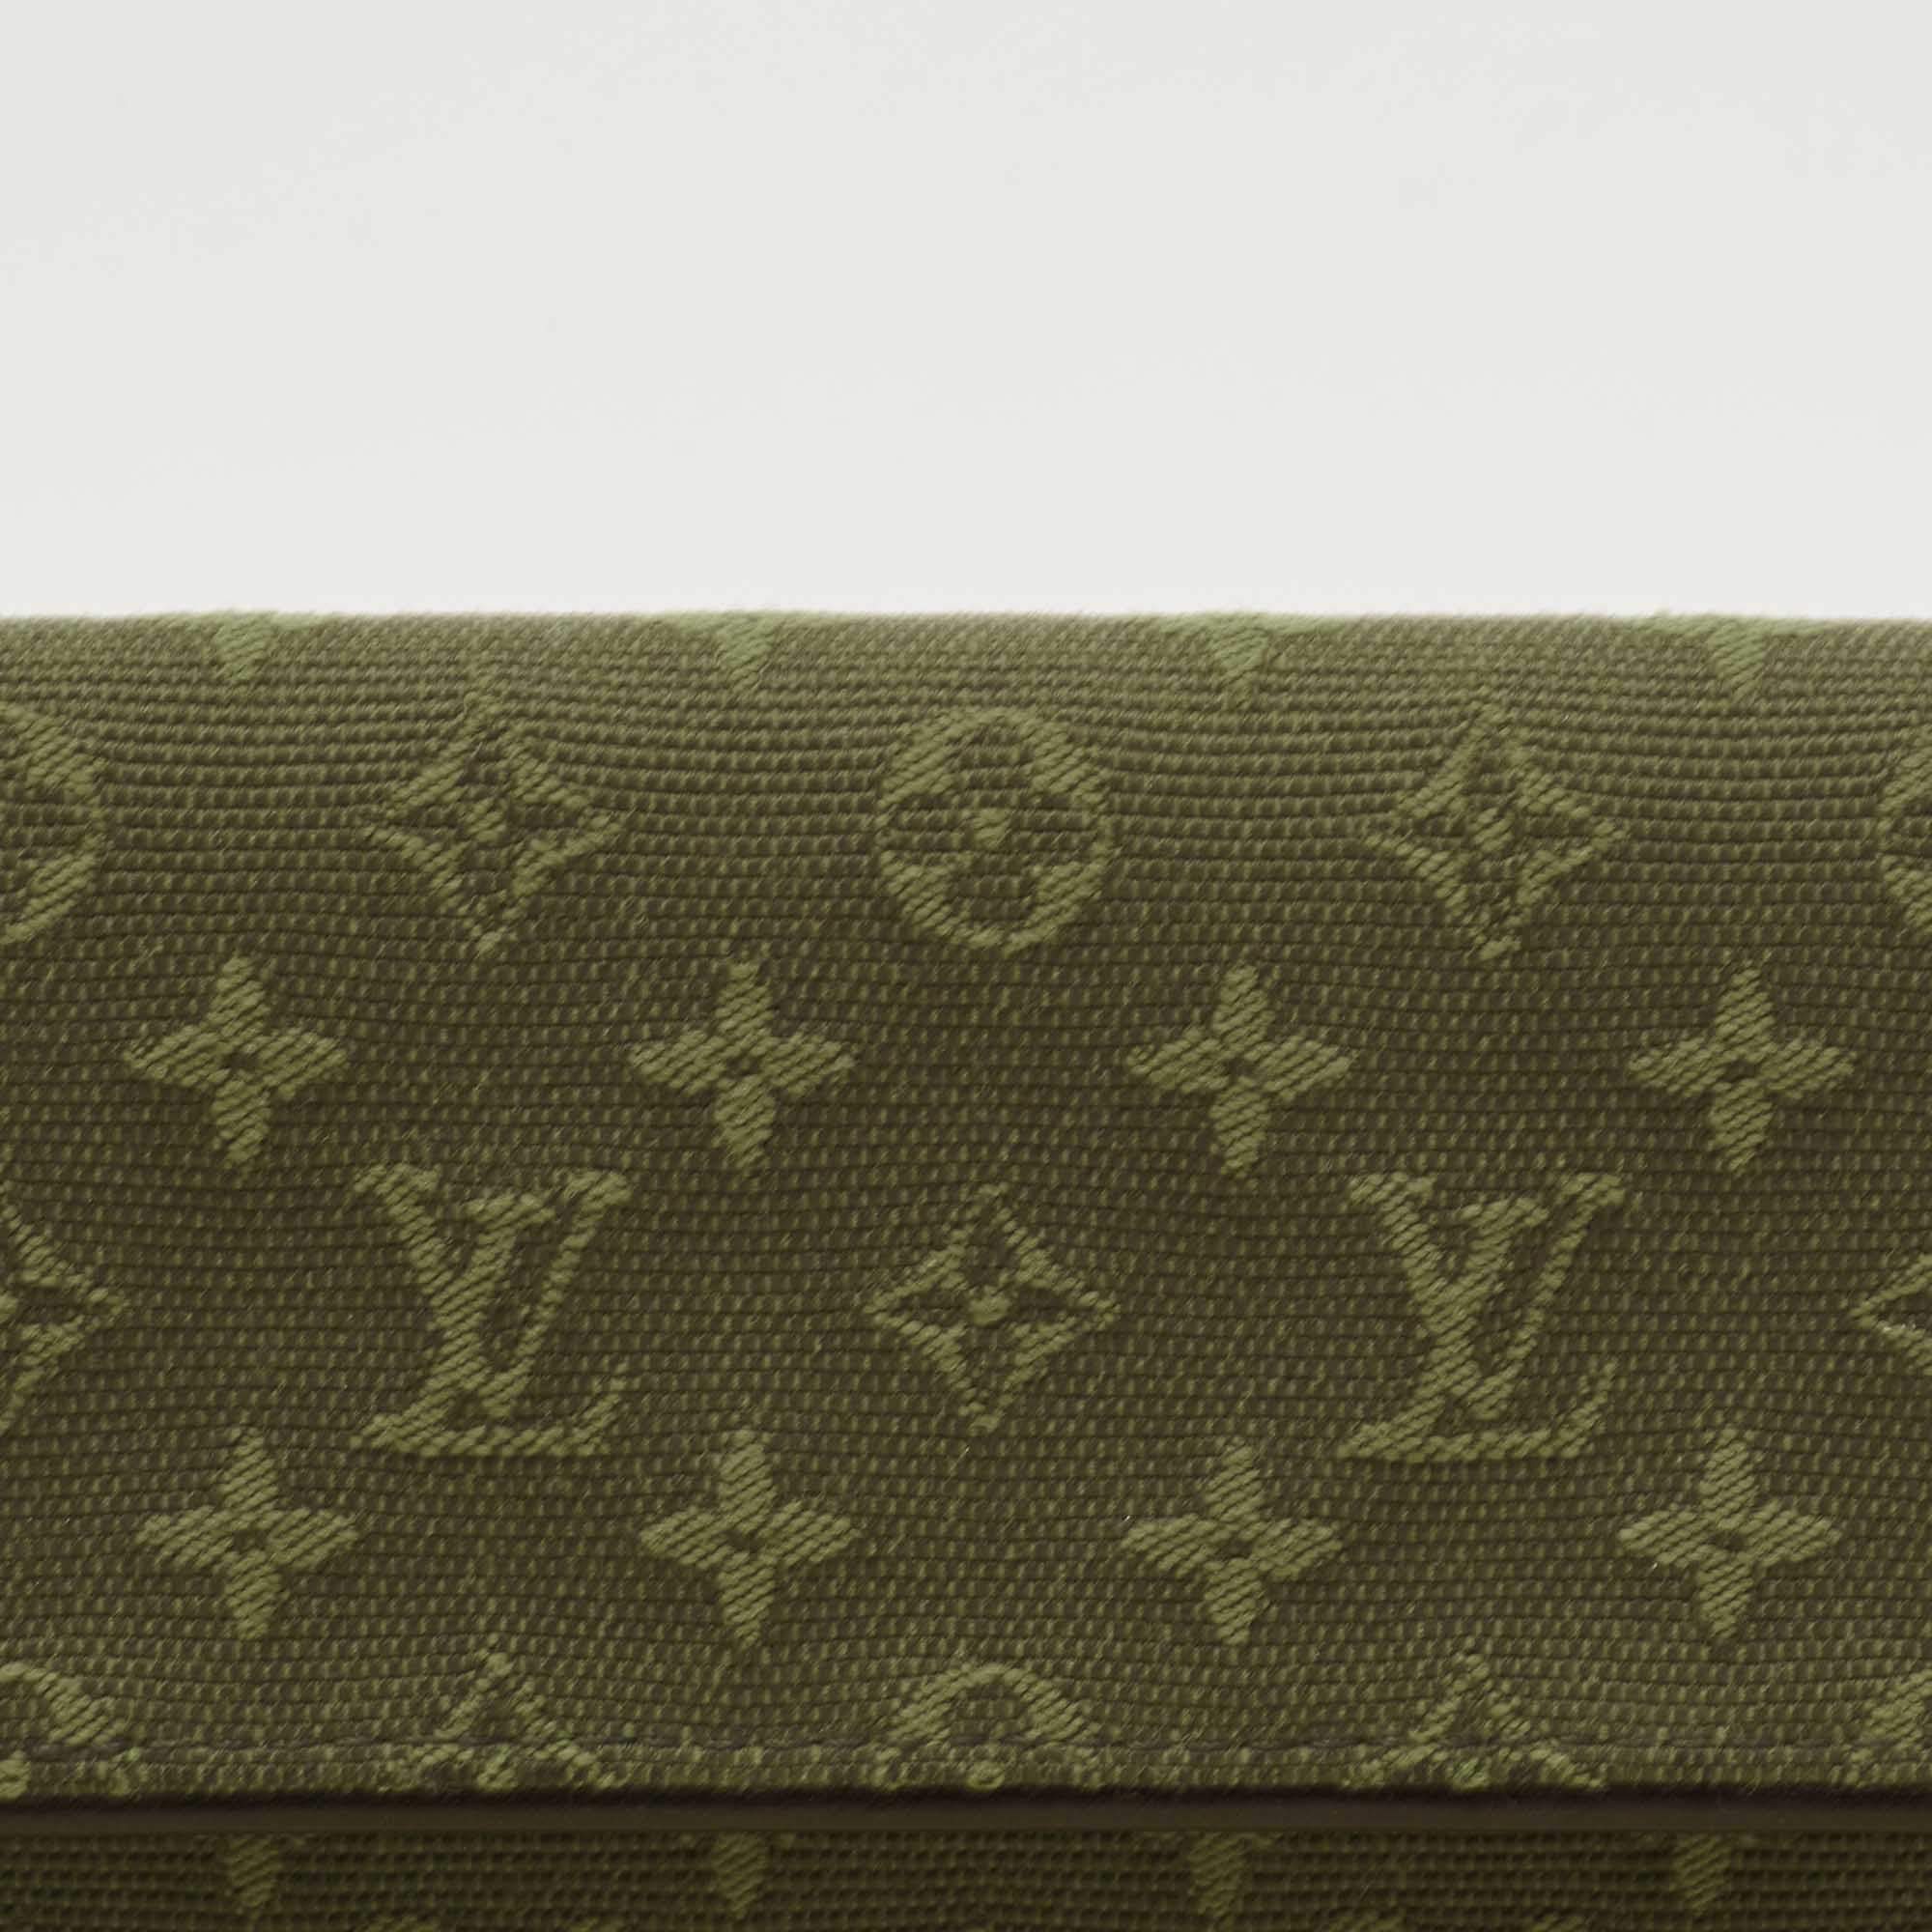 Louis Vuitton Army Green Canvas Monogram Mini Long Wallet – Season